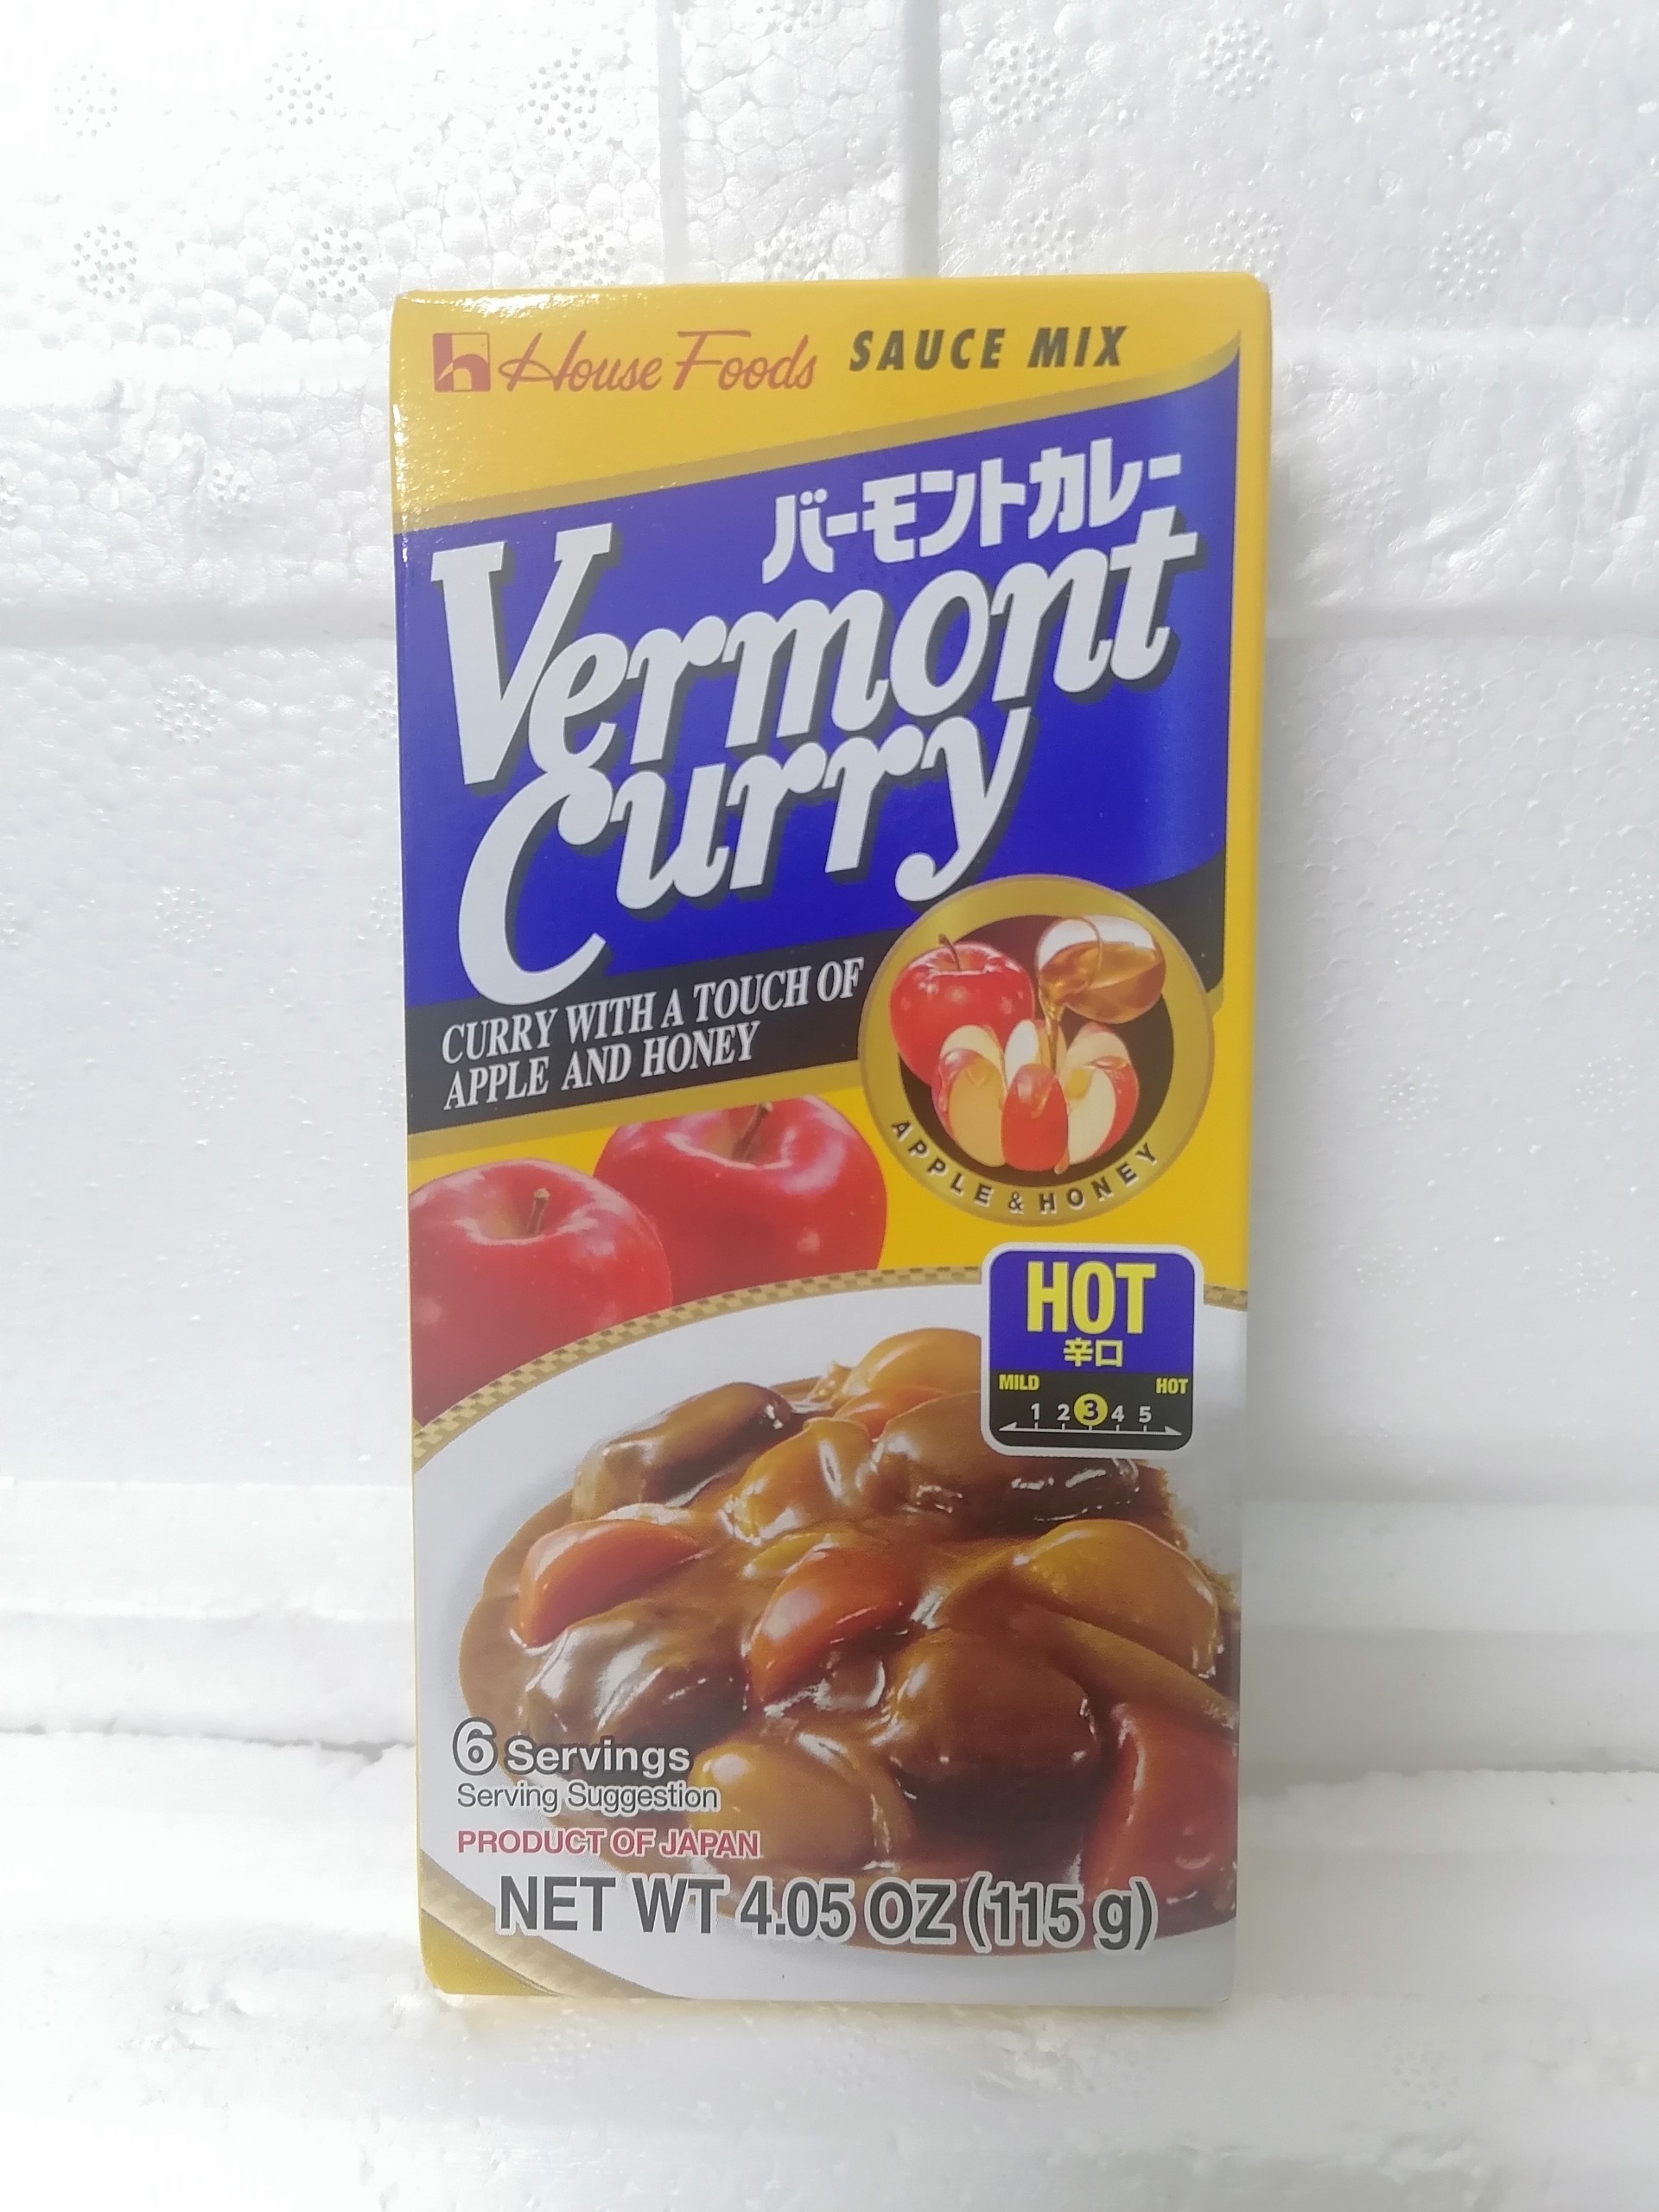 [(Nhỏ) 115g - Vermont - HOT) Viên xốt cà ri cô đặc vị cay [Japan] HOUSE FOODS Curry Sauce Mix